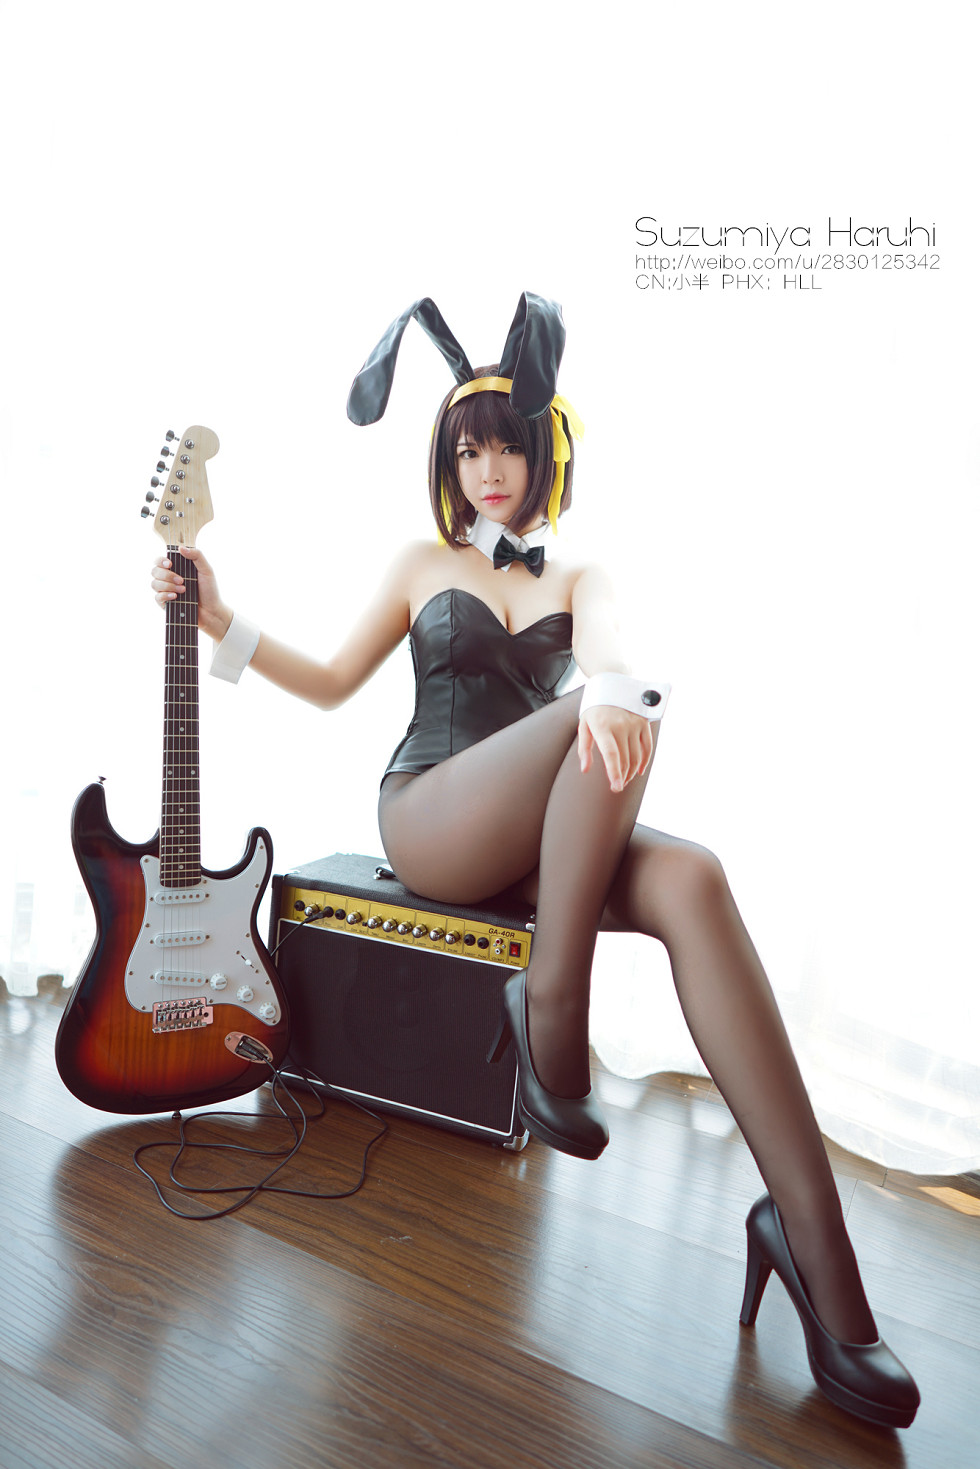 嫩模黑丝腿控性感兔女郎之吉他美女迷人写真15P